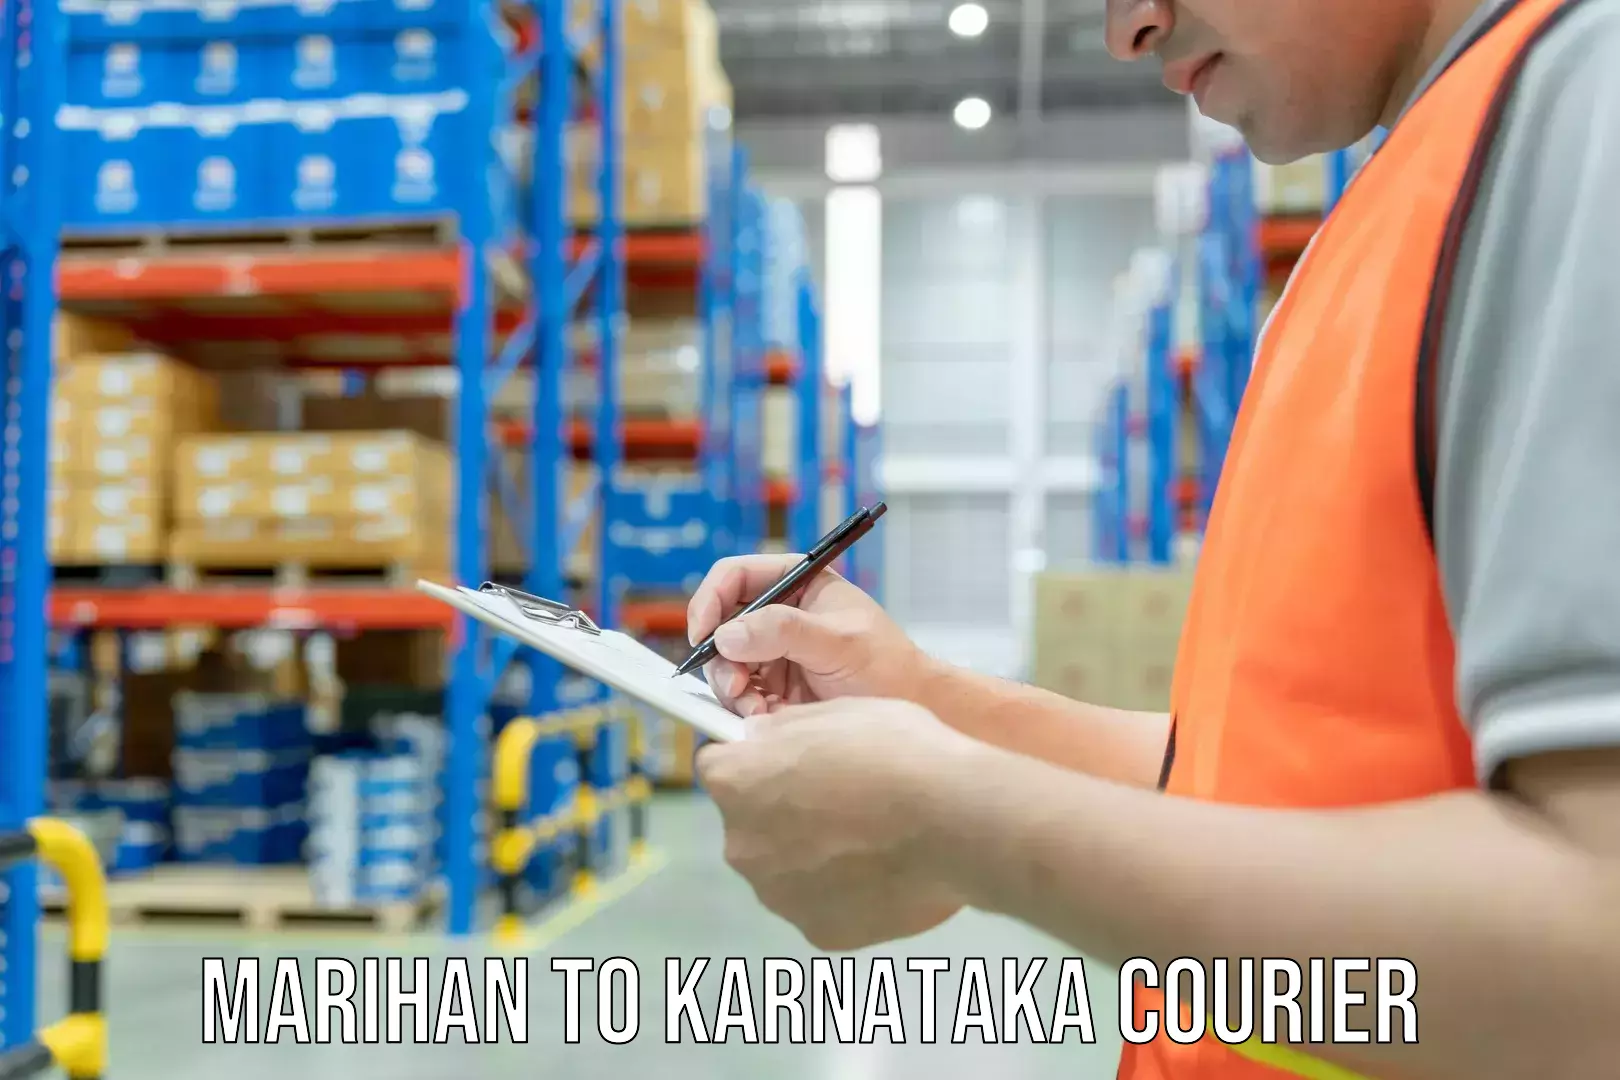 Skilled furniture transporters Marihan to Karnataka